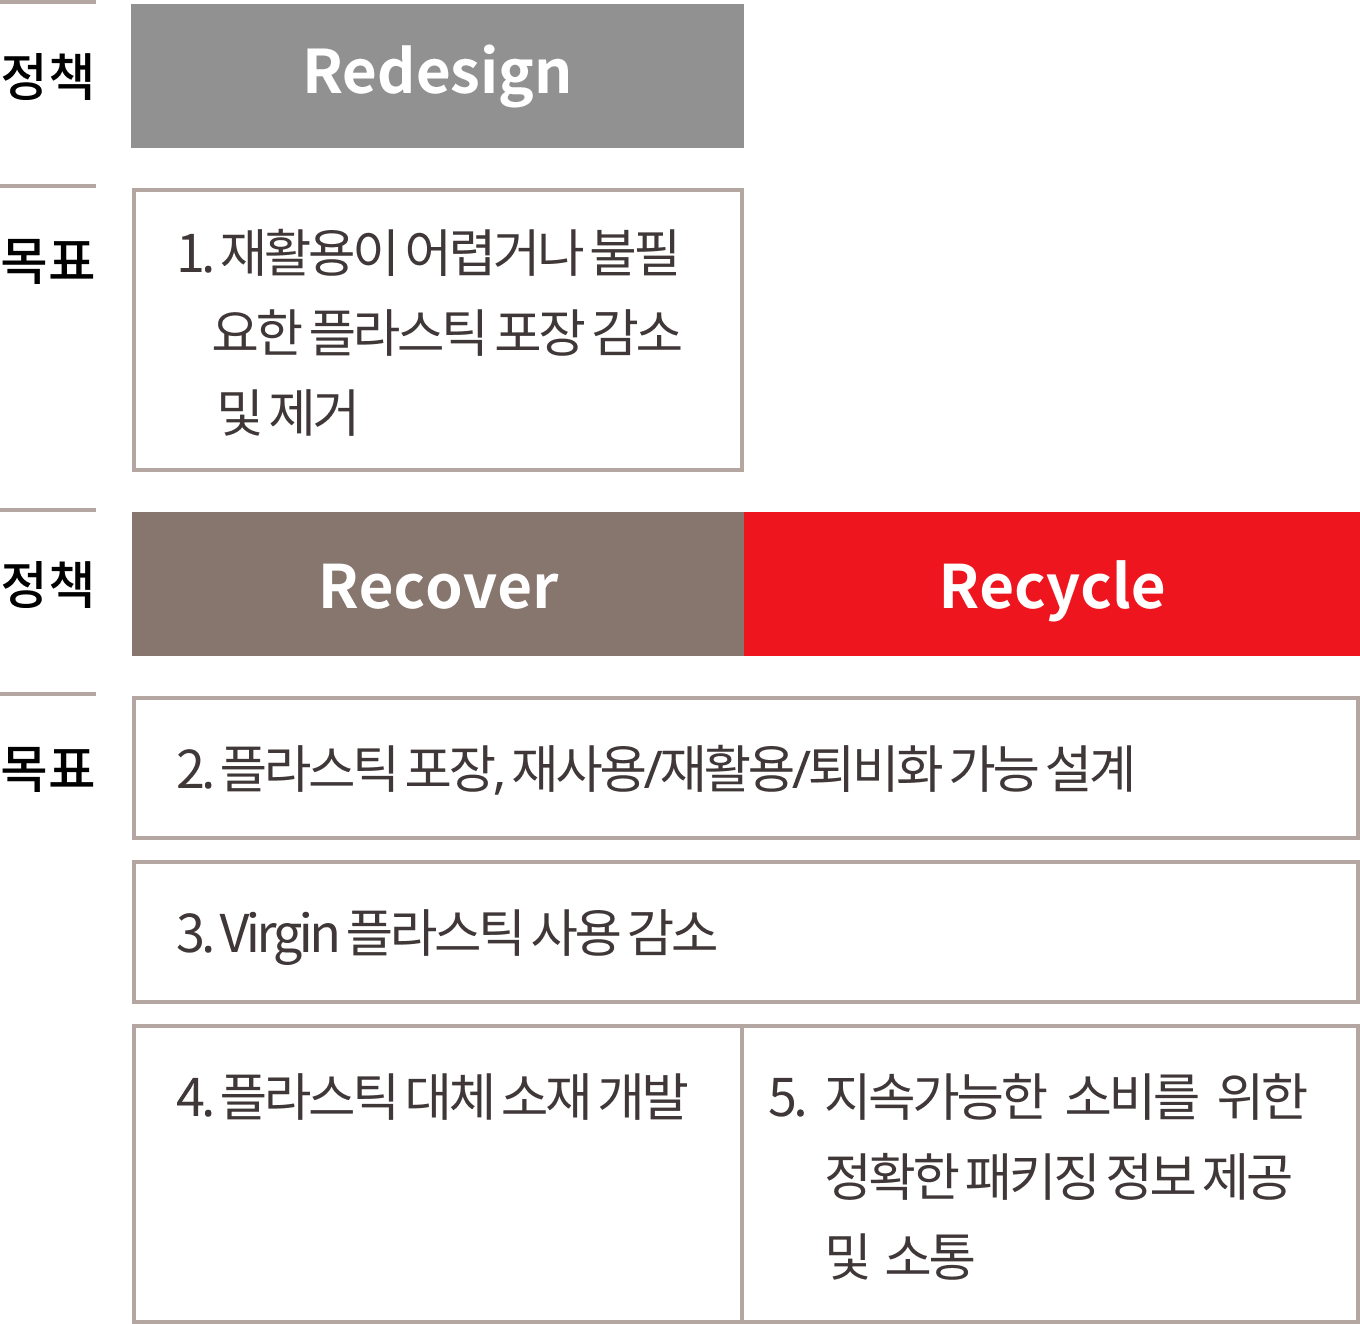 플라스틱 원재료를 감축하고 CO2 발생을 줄이기 위해 3R(Redesign, Recover, Recycle) 정책을 실천하고 있습니다. 친환경  설계(Redesign) 측면에서 불필요한 플라스틱 제거, 포장재 사이즈와 두께 최적화 설계 등으로 패키징 개선 과제를 통해 플라스틱 원재료 감축과 온실가스 배출량을 줄였습니다.